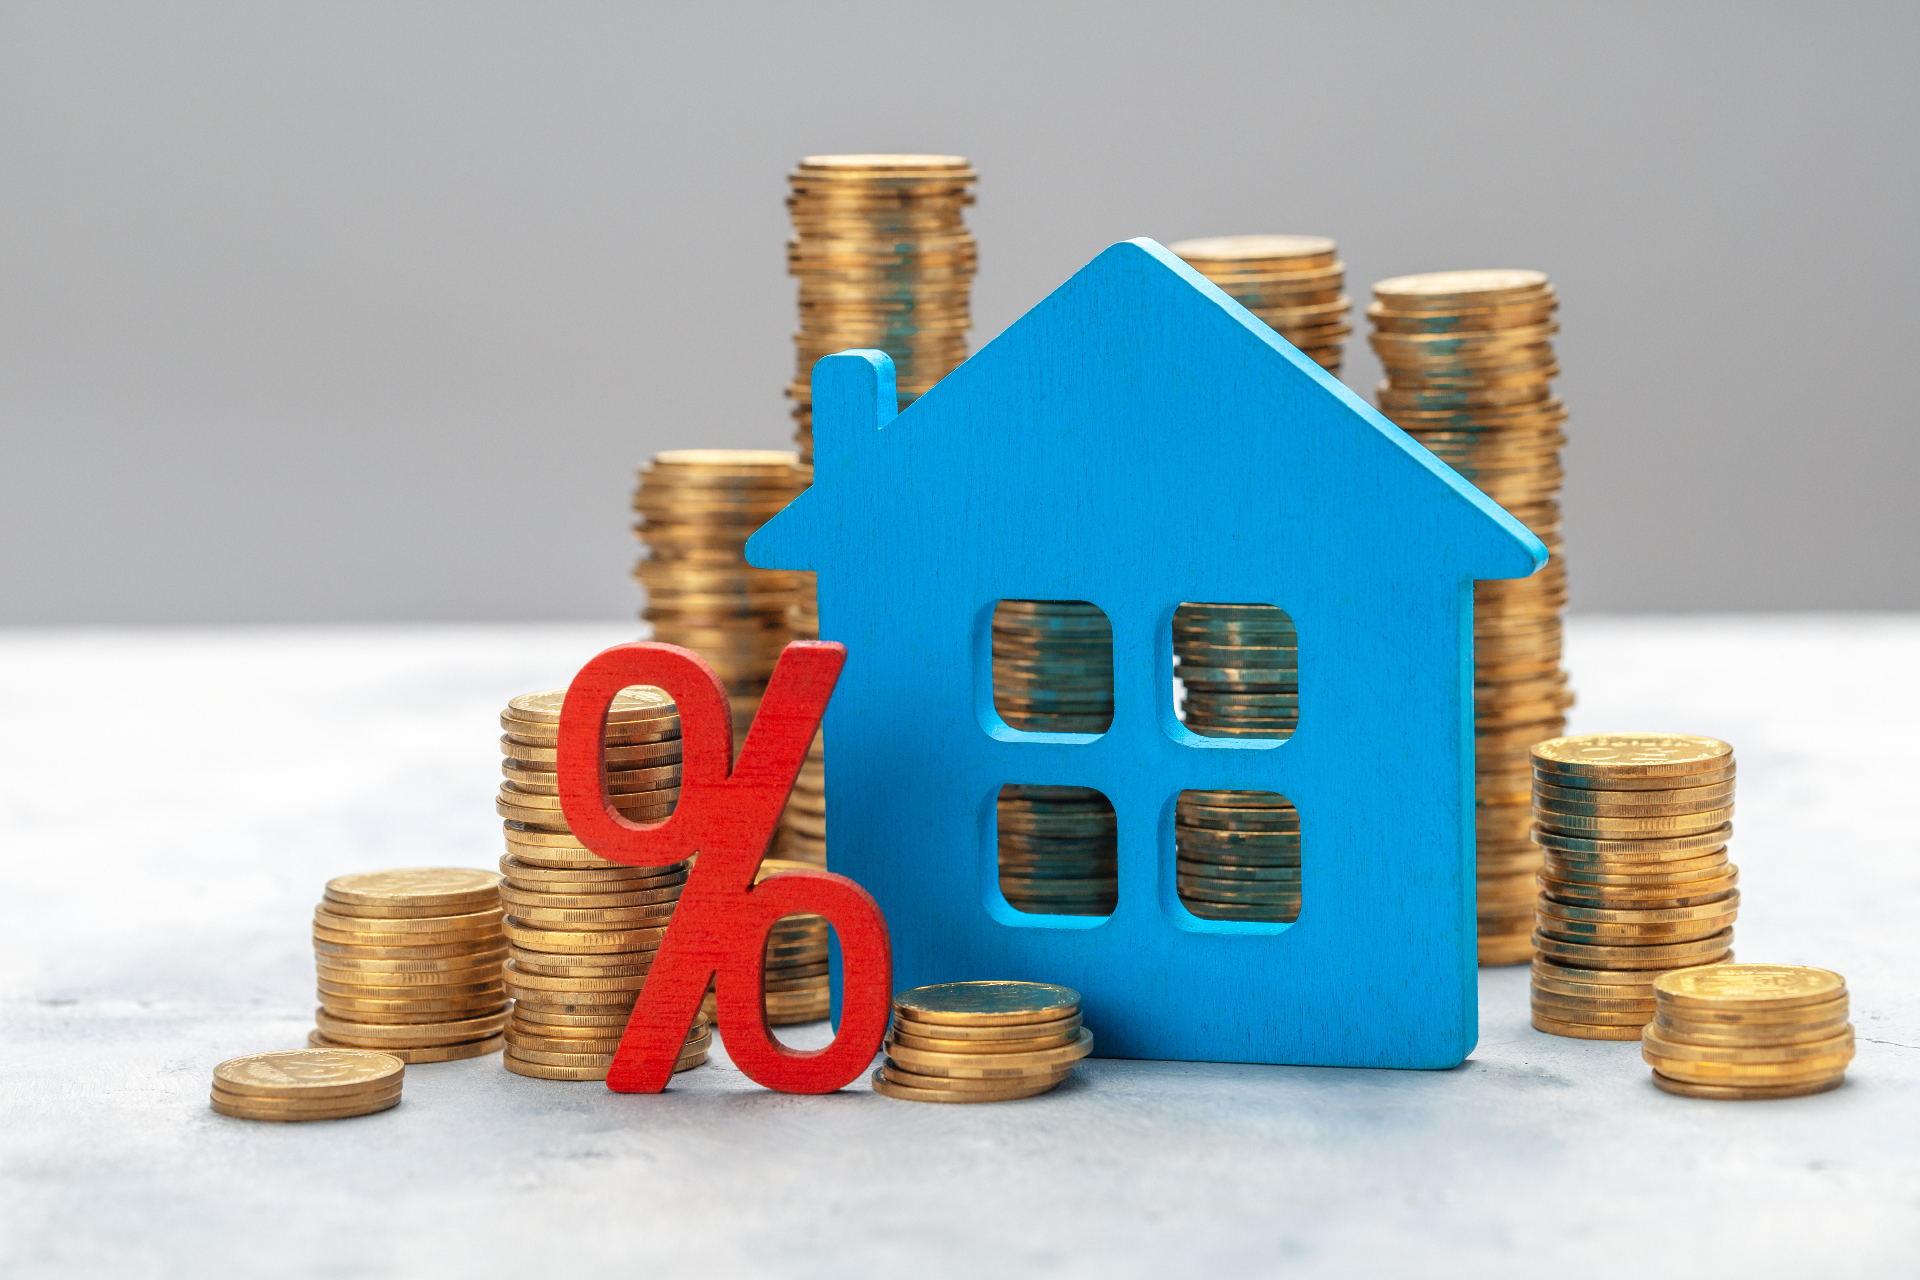 Главный плюс ипотеки с нулевым взносом для заемщика — не нужно копить деньги на покупку жилья, можно быстрее выйти на сделку и зафиксировать его стоимость